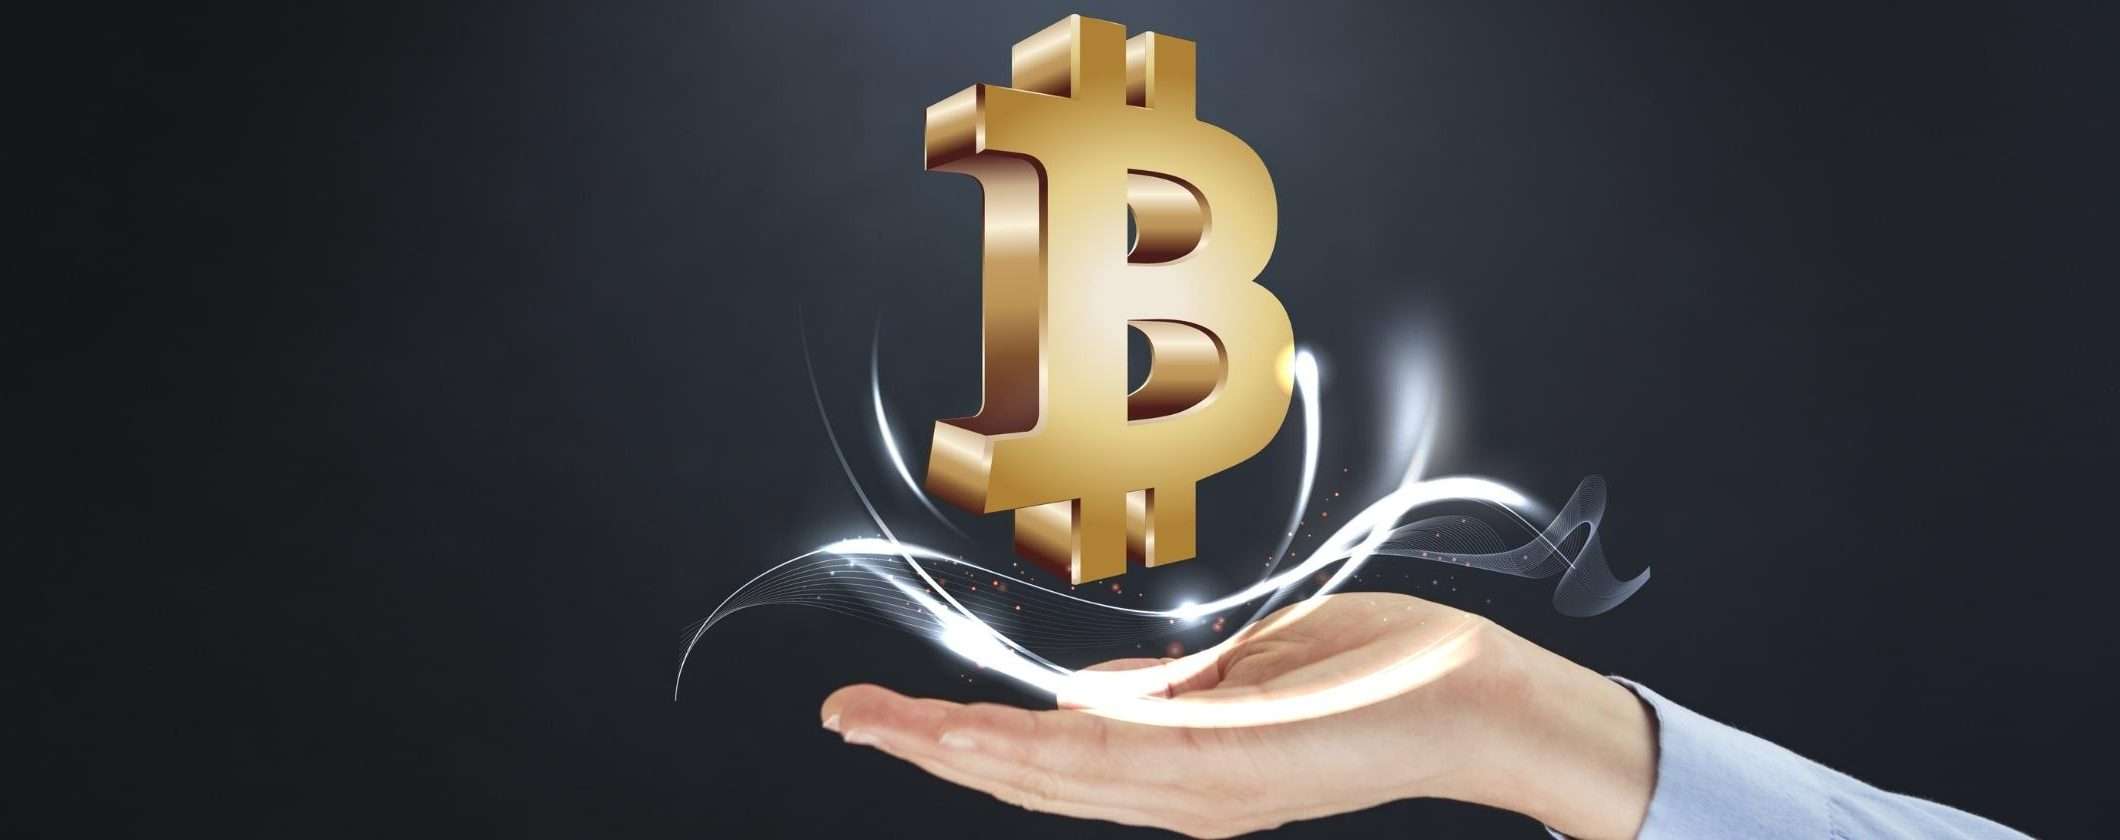 Bitcoin rimane nella posizione di paura estrema